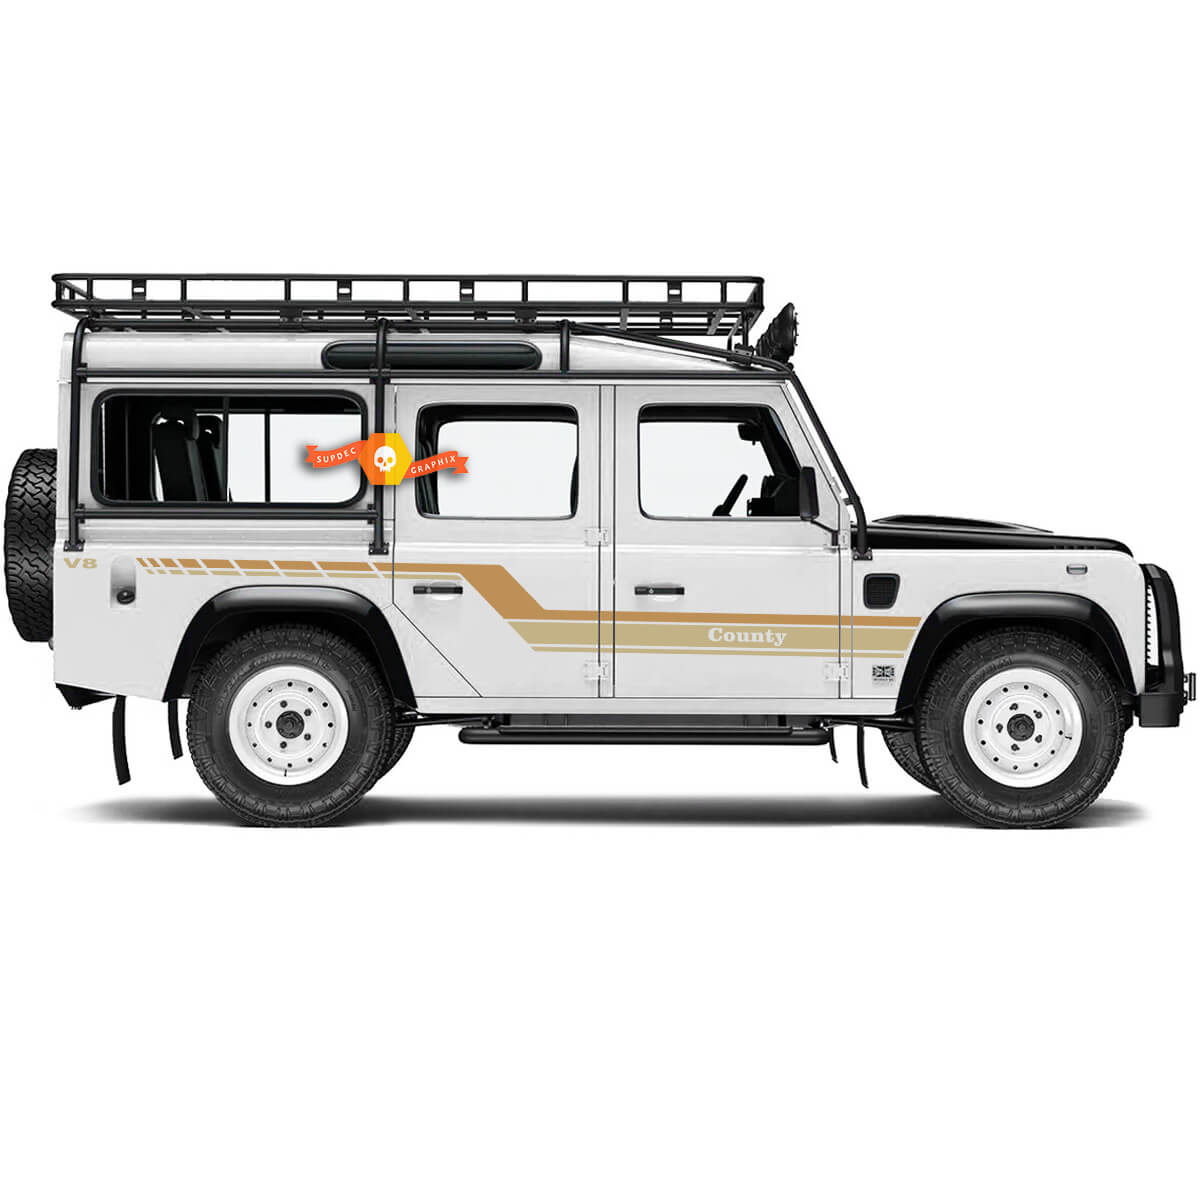 Land Rover Defender 110 - benutzerdefinierter Text - County -Aufkleber -Aufkleber -Seitentüren - Desert Edition - Aufkleber für Land Rover Defender 110